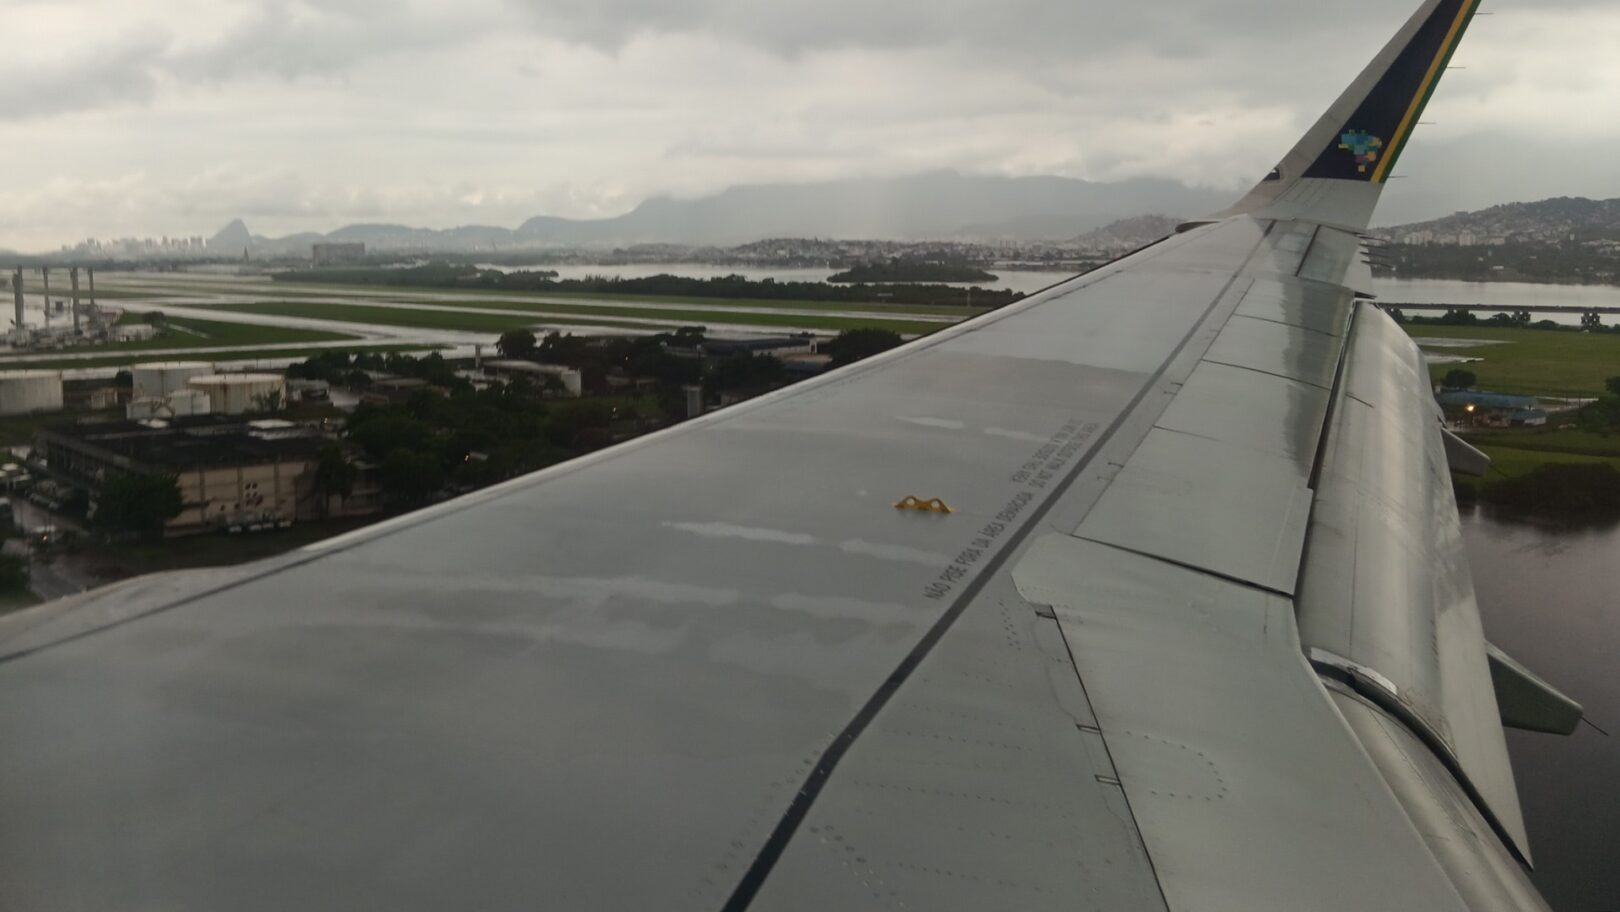 Azul 2981 from Porto Alegre to Rio de Janeiro, landing in Rio de Janeiro